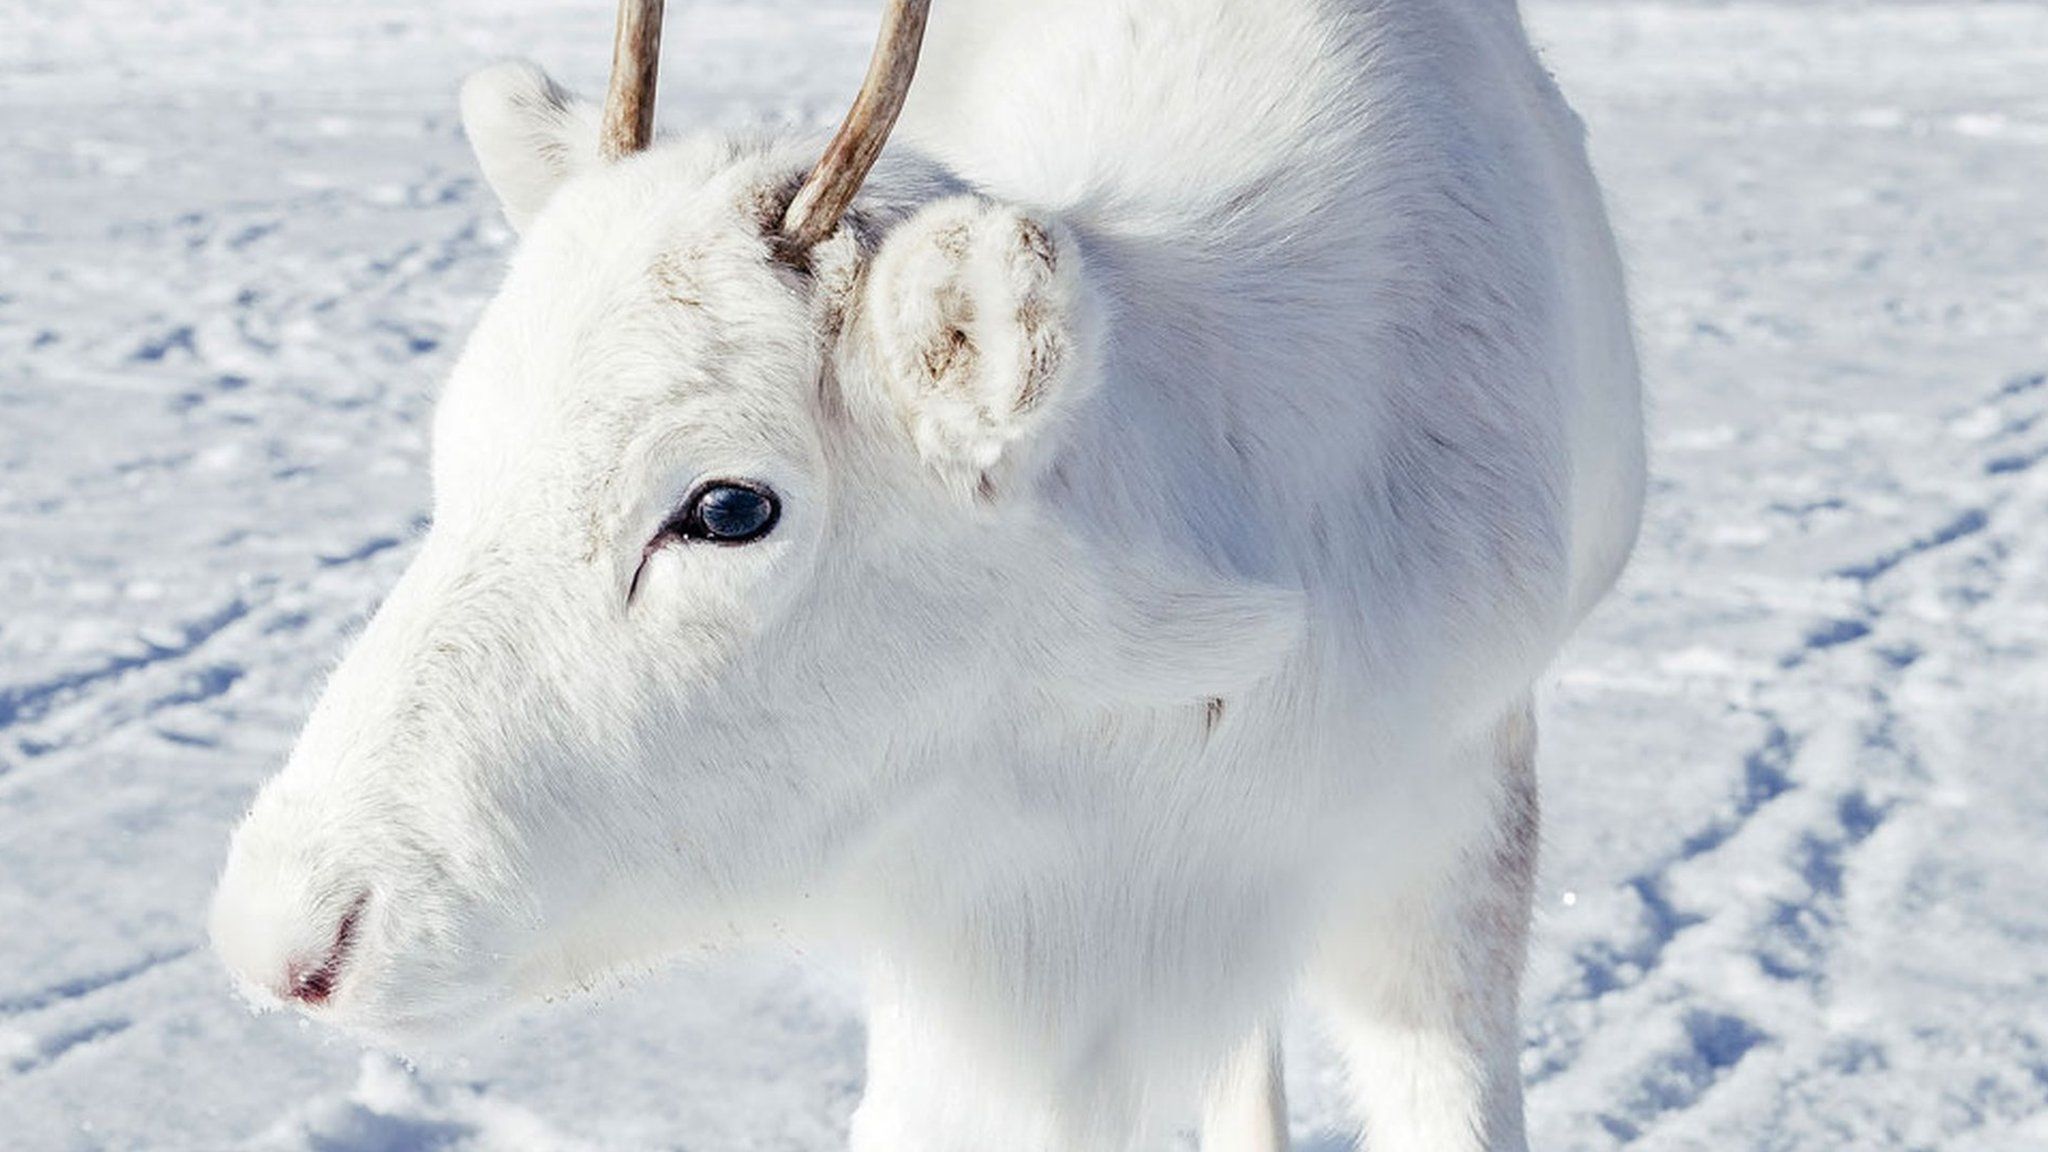 Reindeer stands in snow